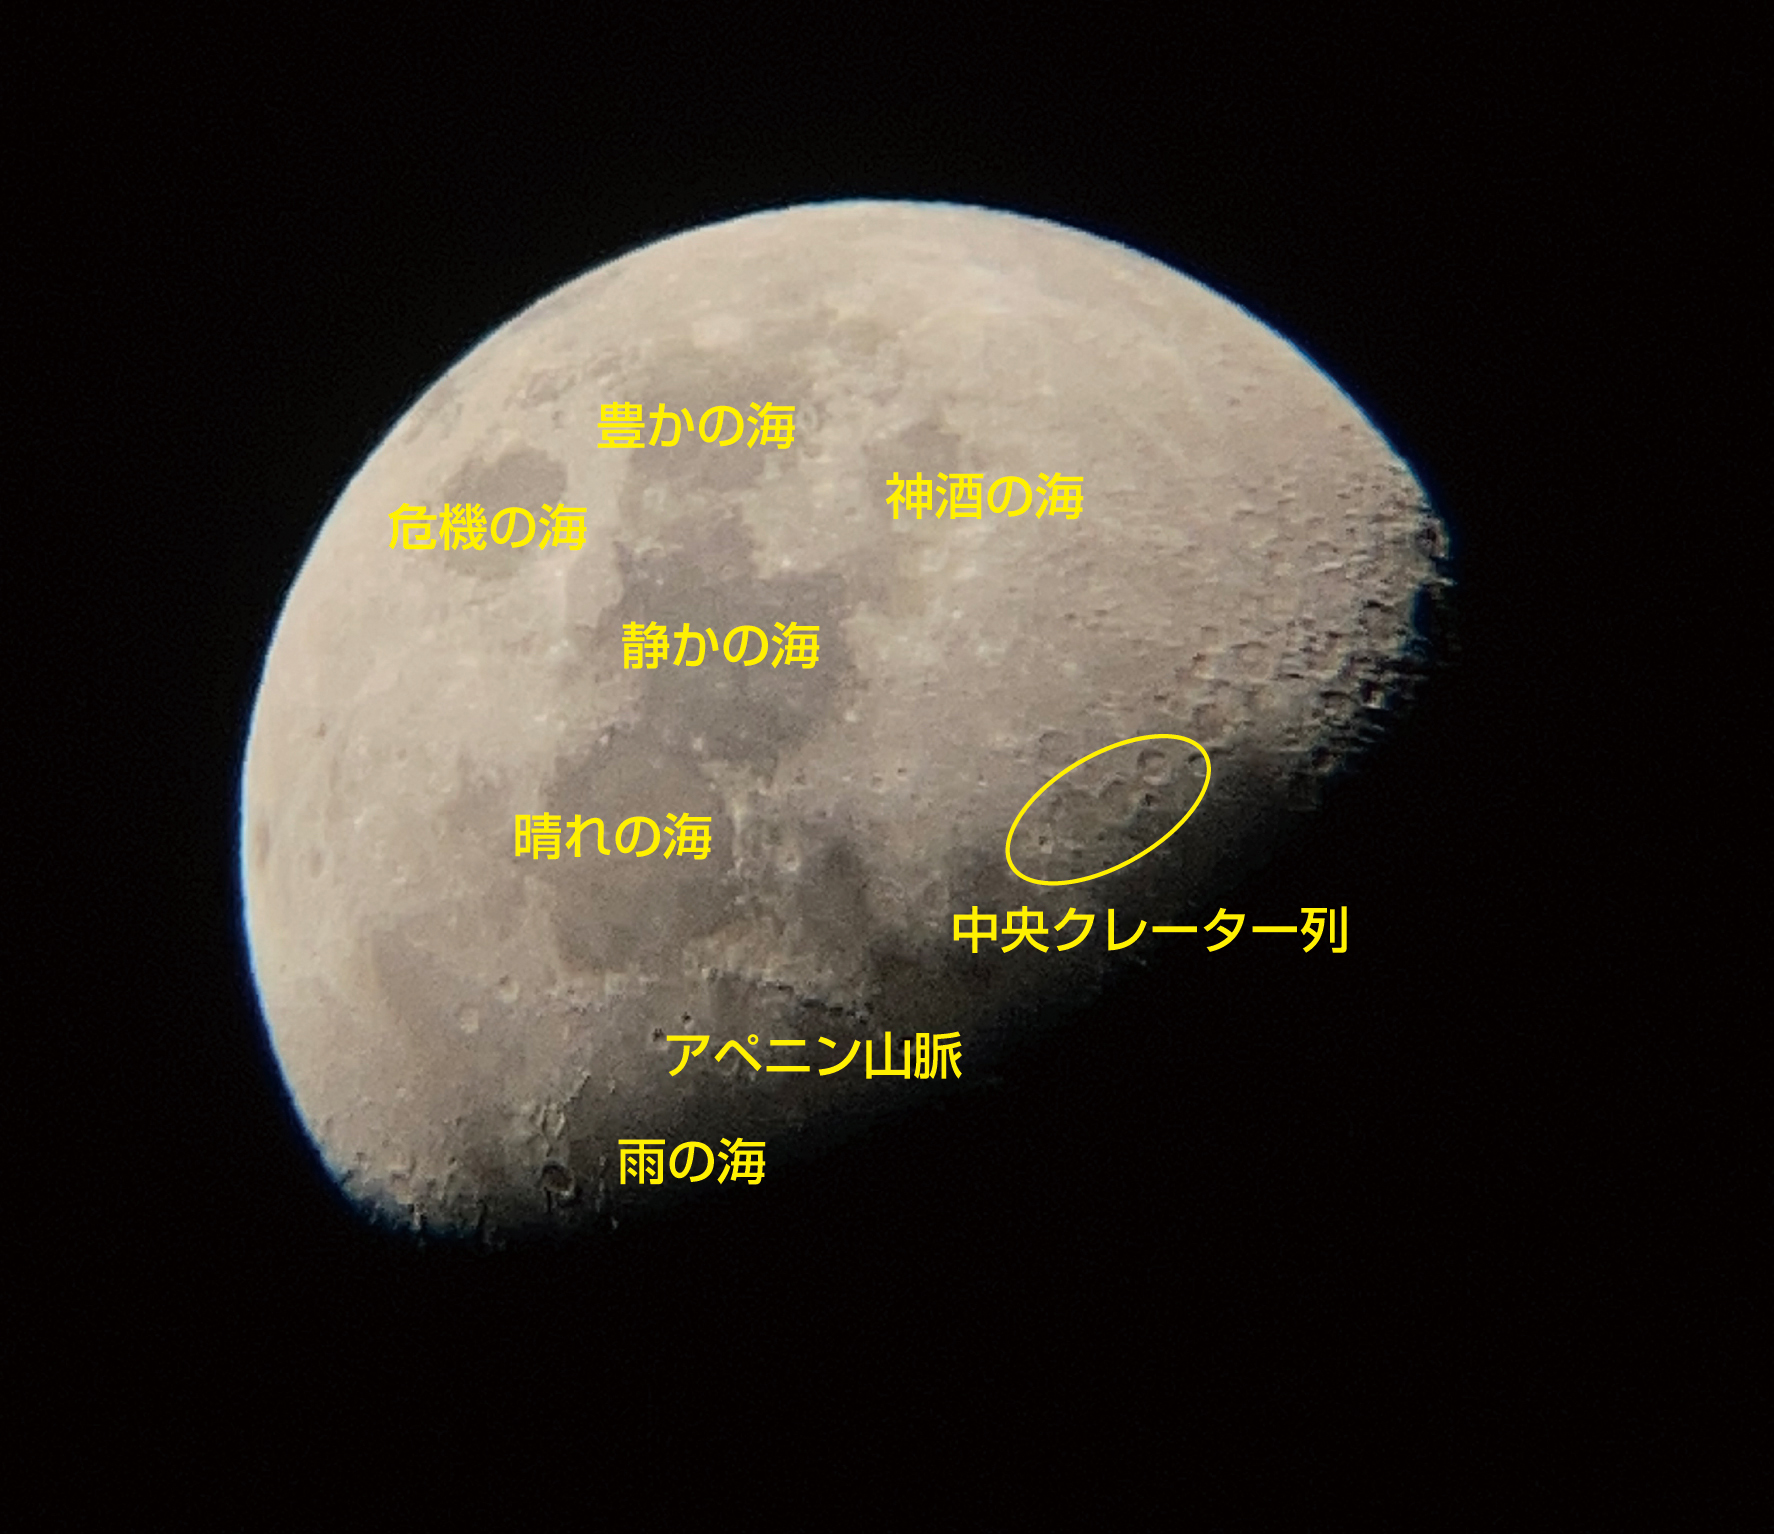 「ウルトラムーンを使用して撮影した月に、ガイドブックで紹介されている地名を書き込んだイメージ」画像